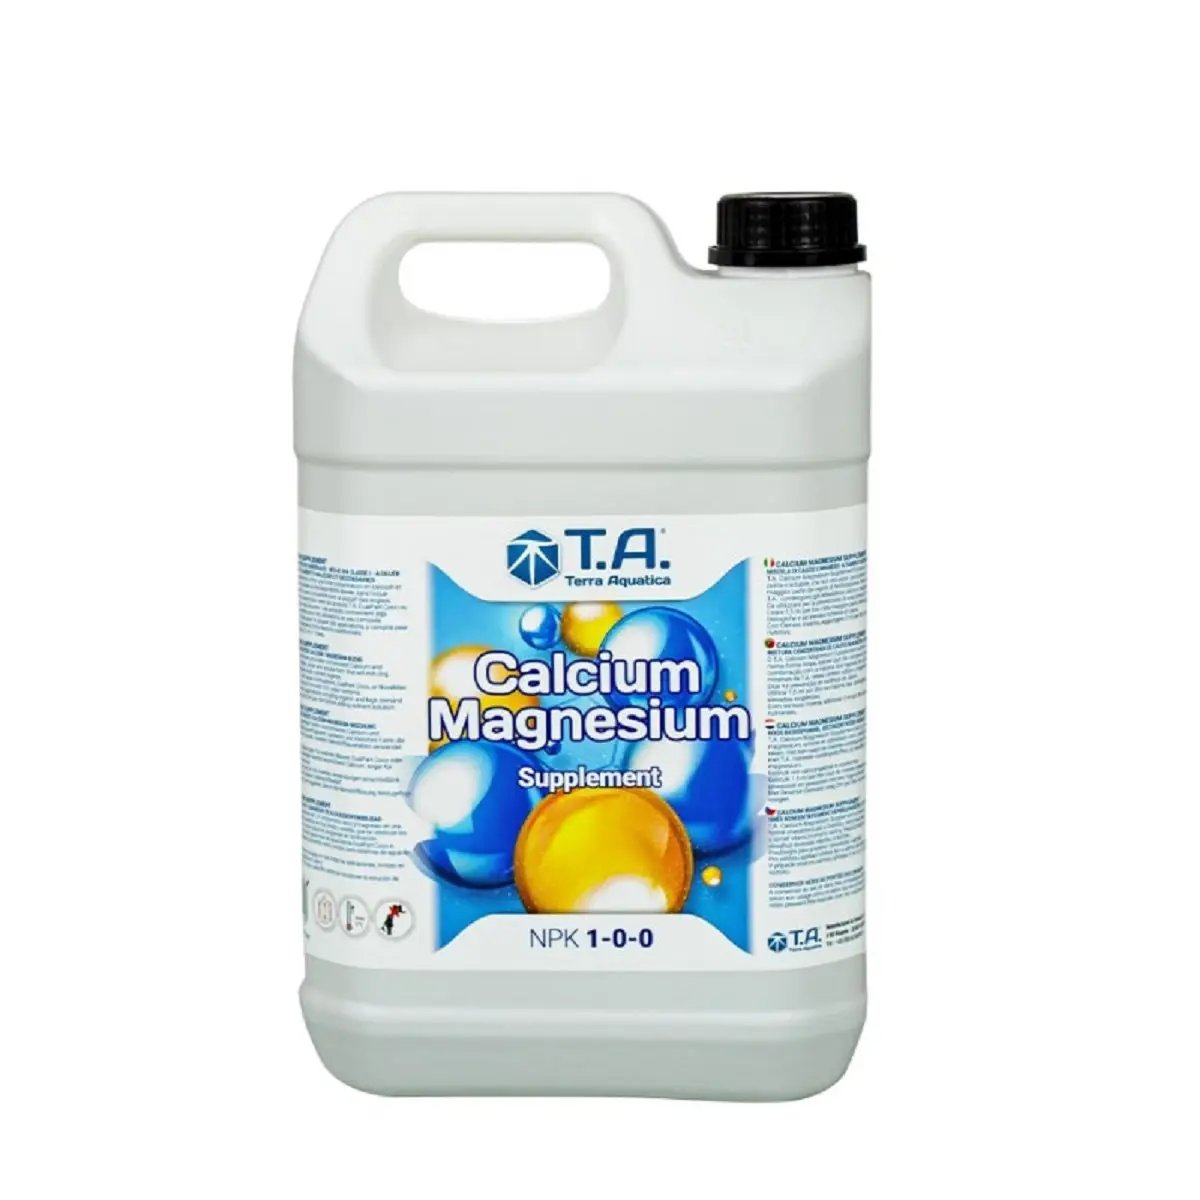 Terra Aquatica Calcium Magnesium Supplement 5 litres